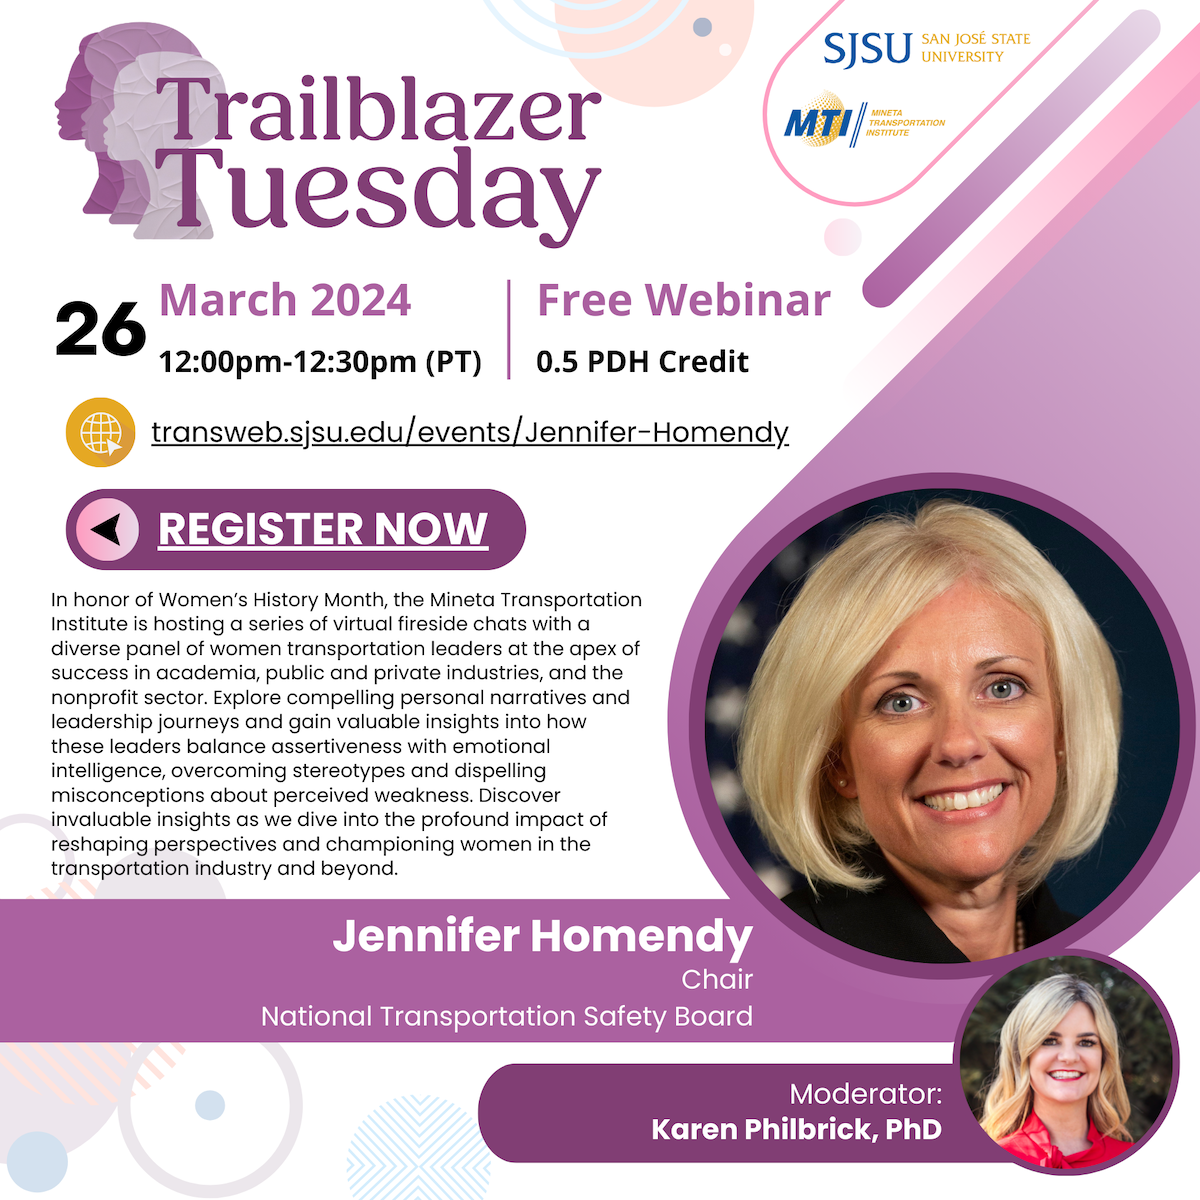 Trailblazer Tuesday with Jennifer Homendy